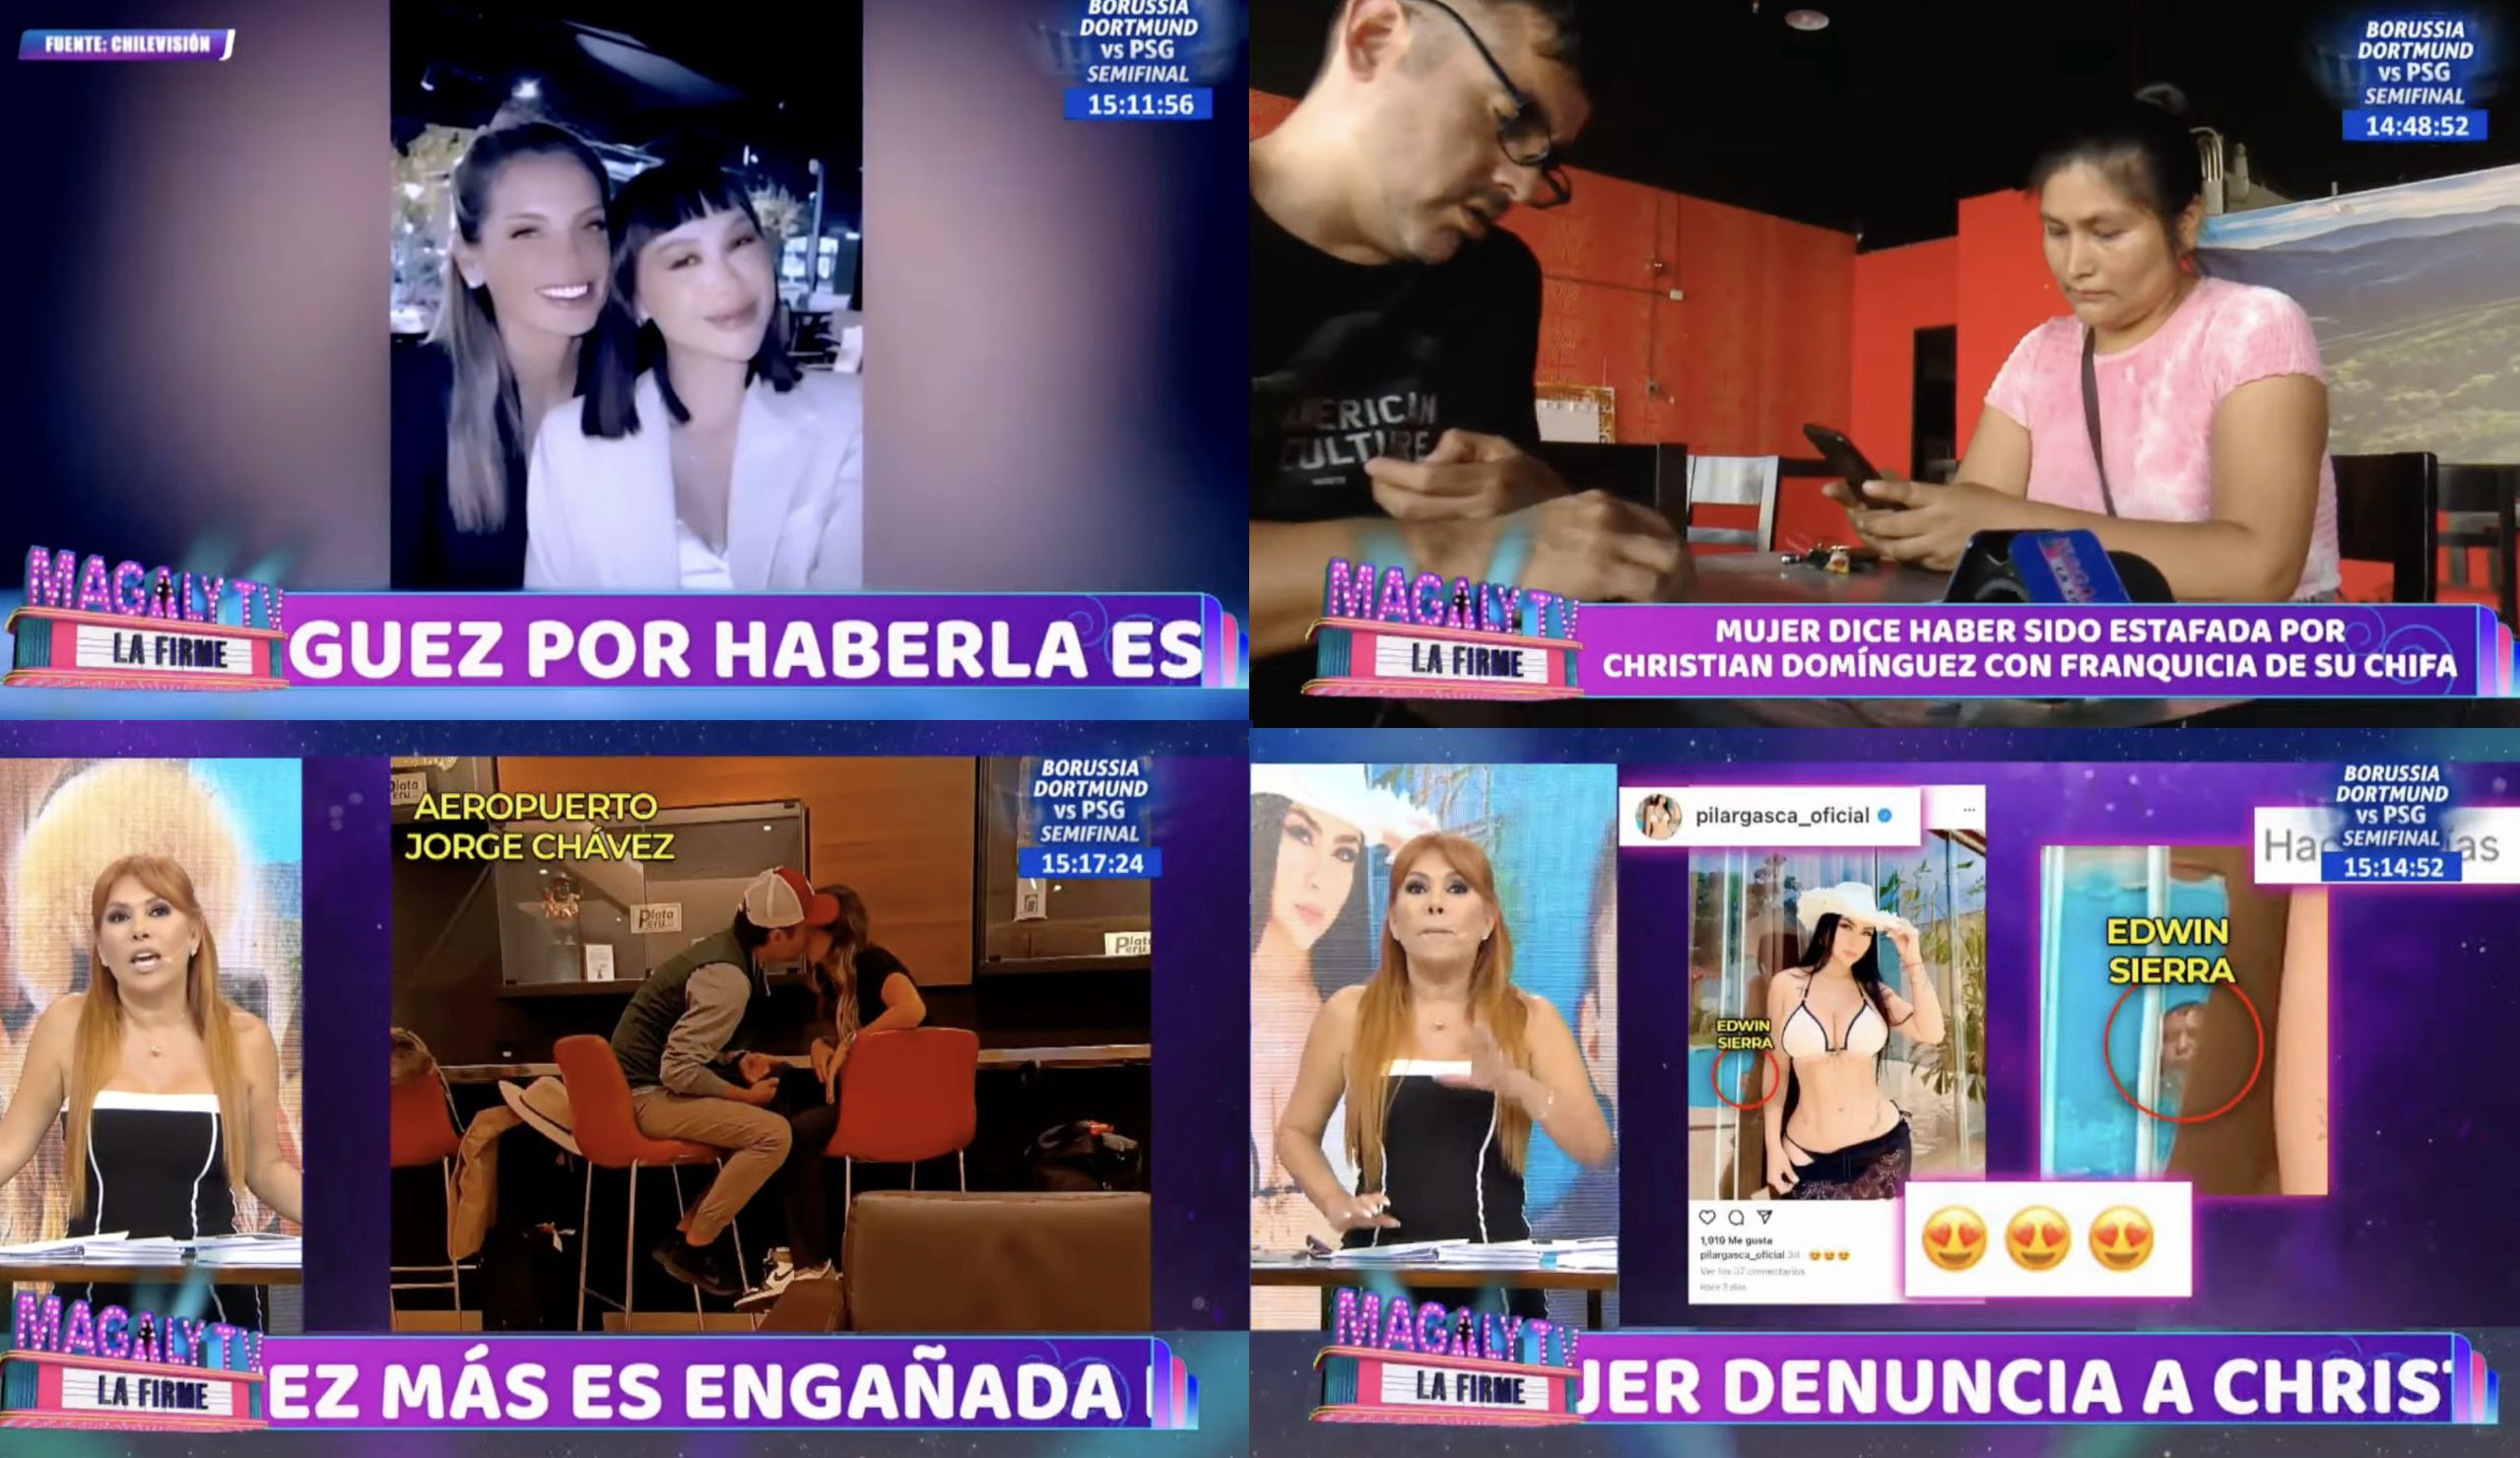 Magaly TV La Firme emitió denuncia contra Christian Domínguez y comentó hechos de la farándula.